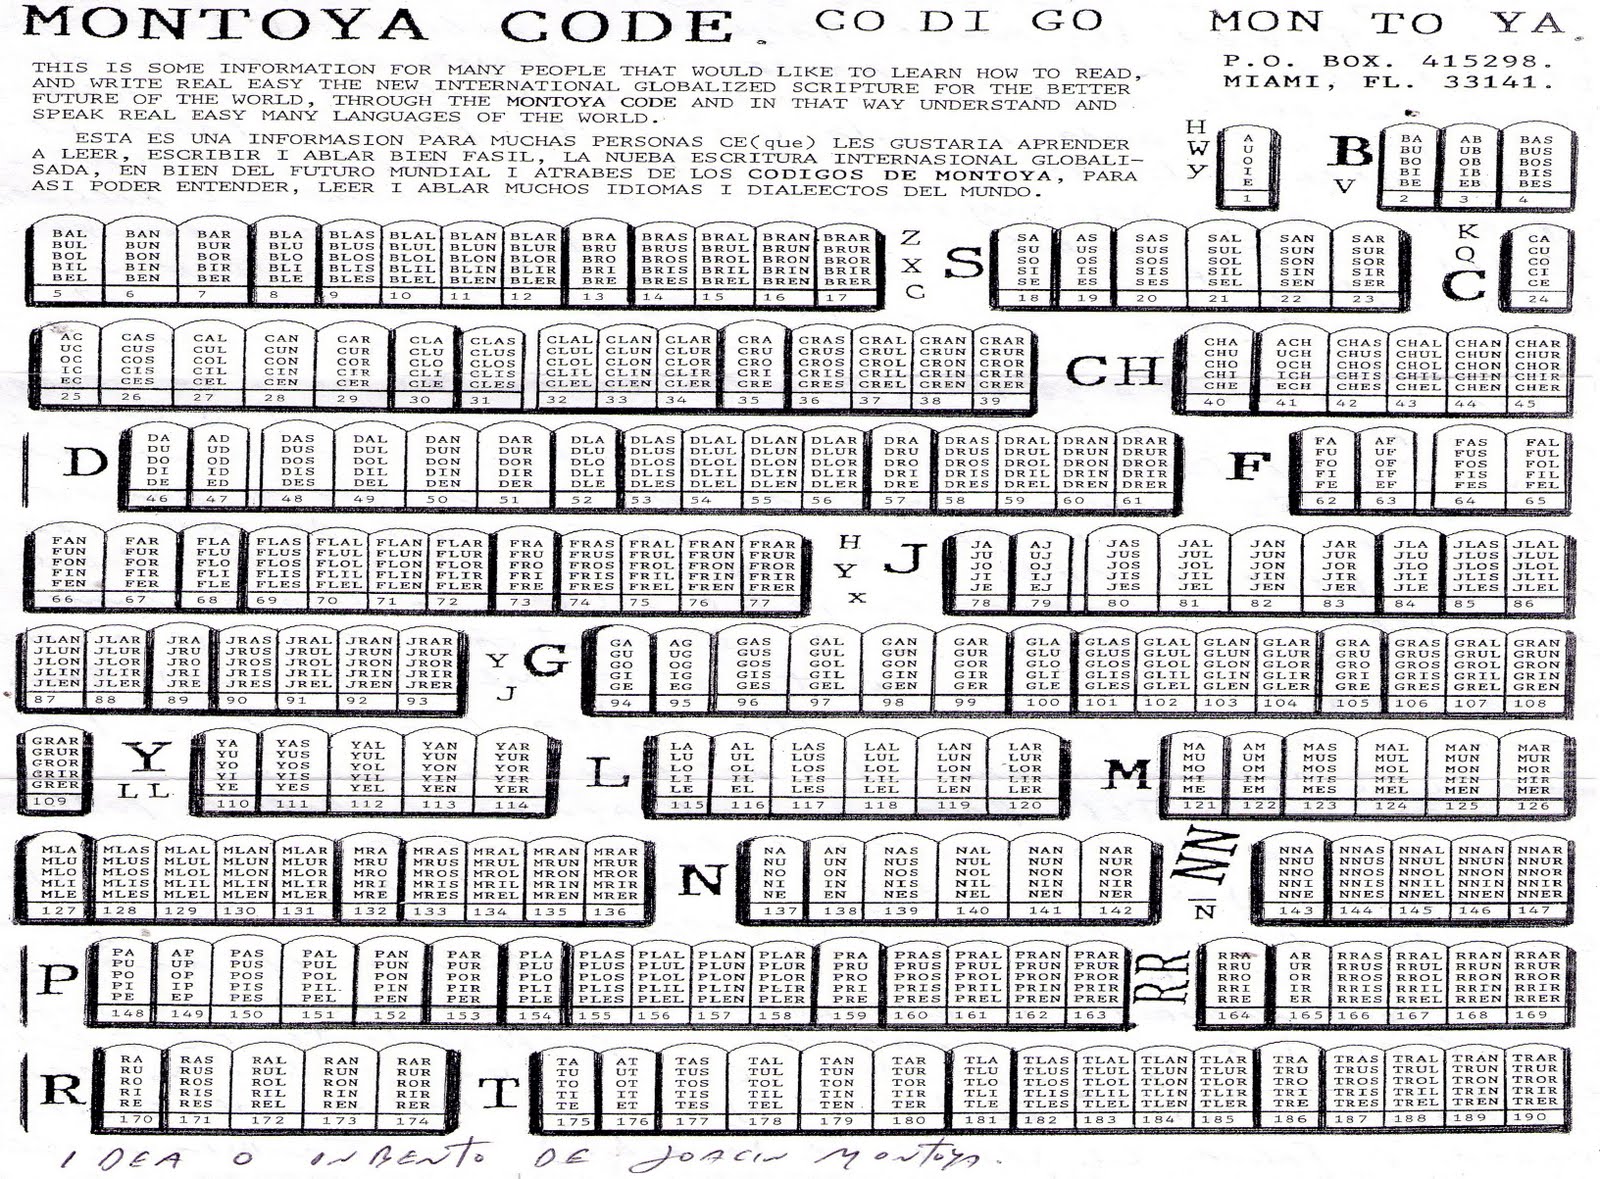 190 tablas de los codigos Montoya